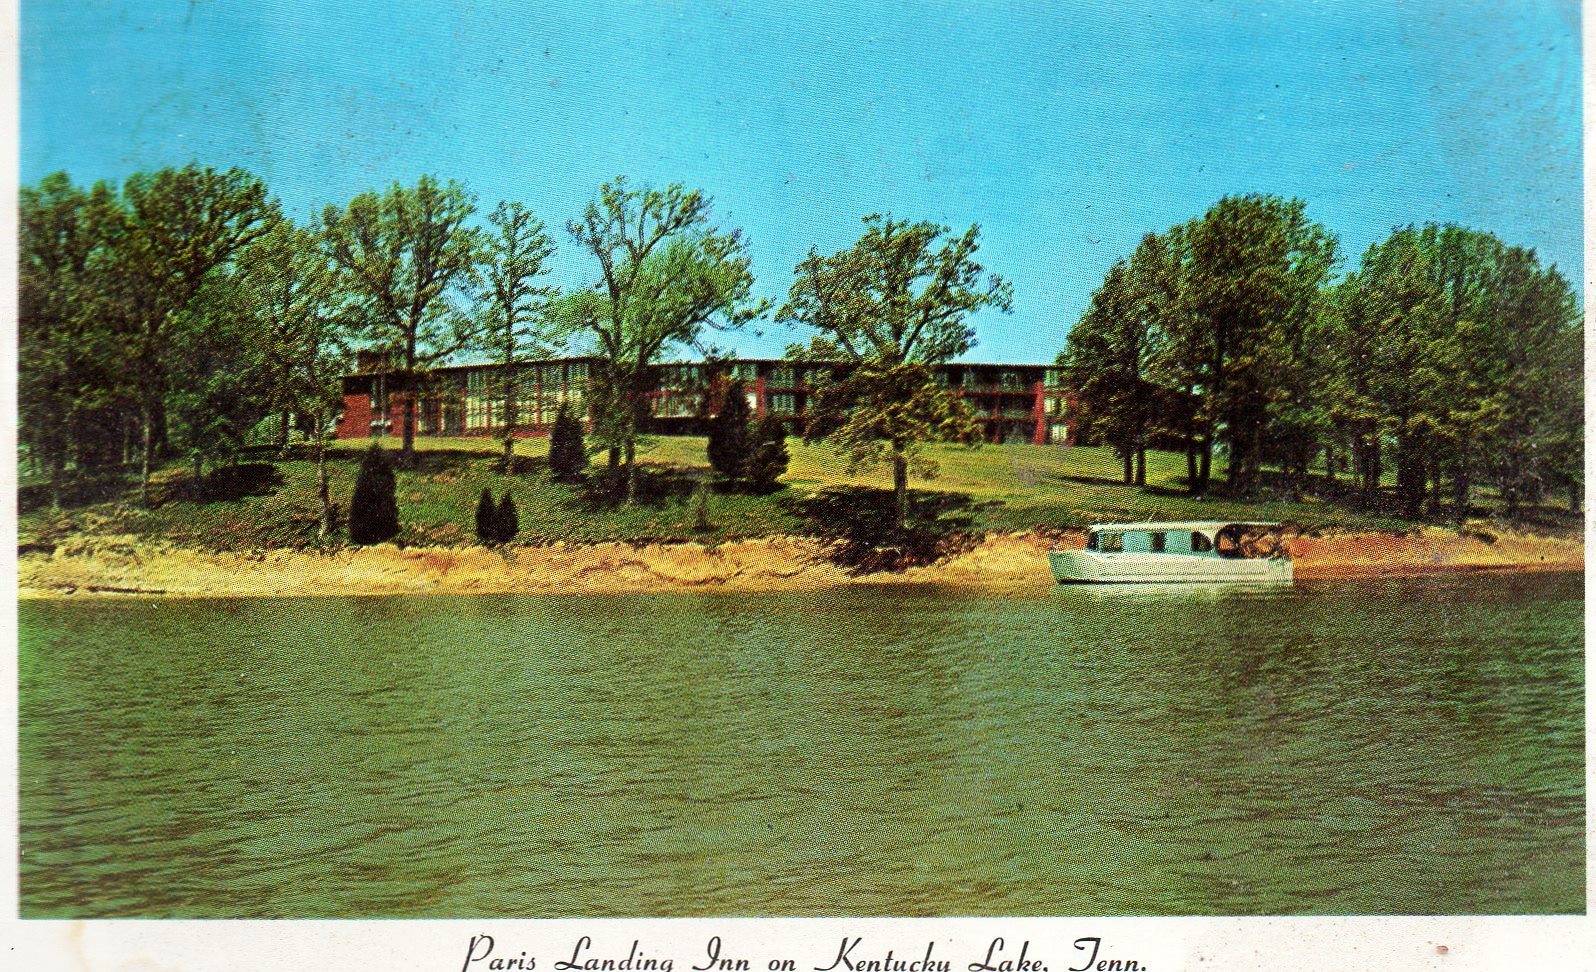 Paris Landing Inn on Kentucky Lake, Tennessee (vintage 1970s) postcard -used - $4.00